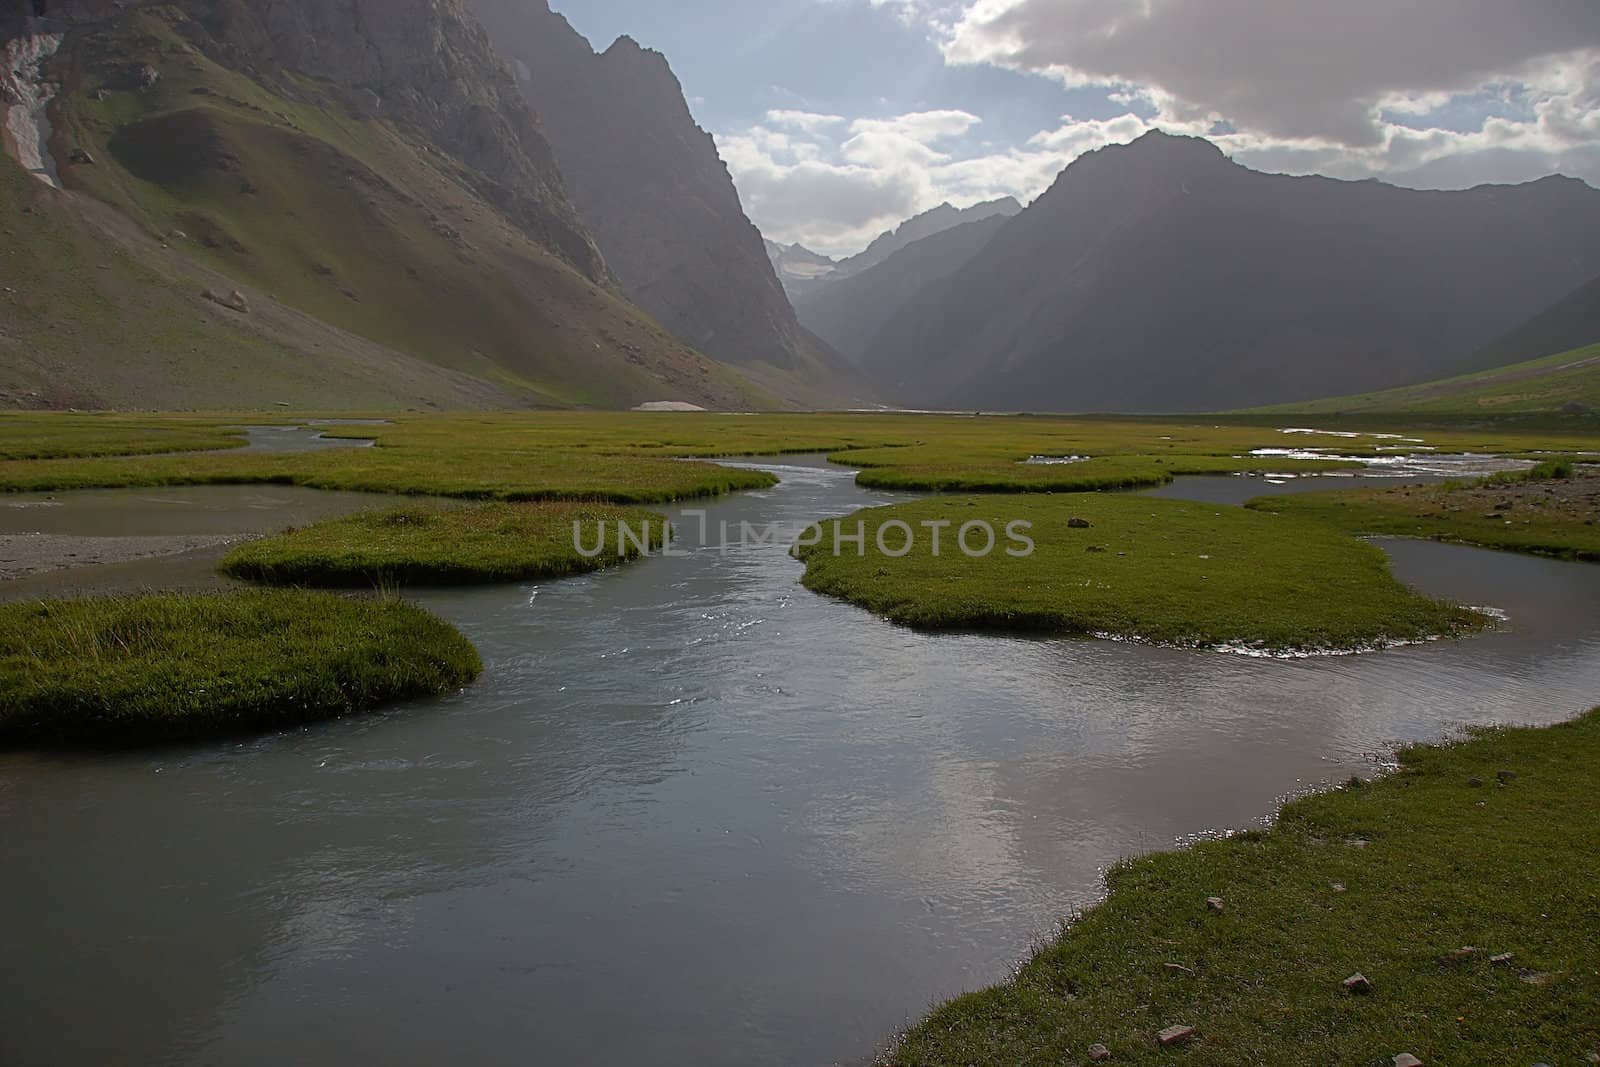 Slow mountain river with grassy islands, Tajikistan.